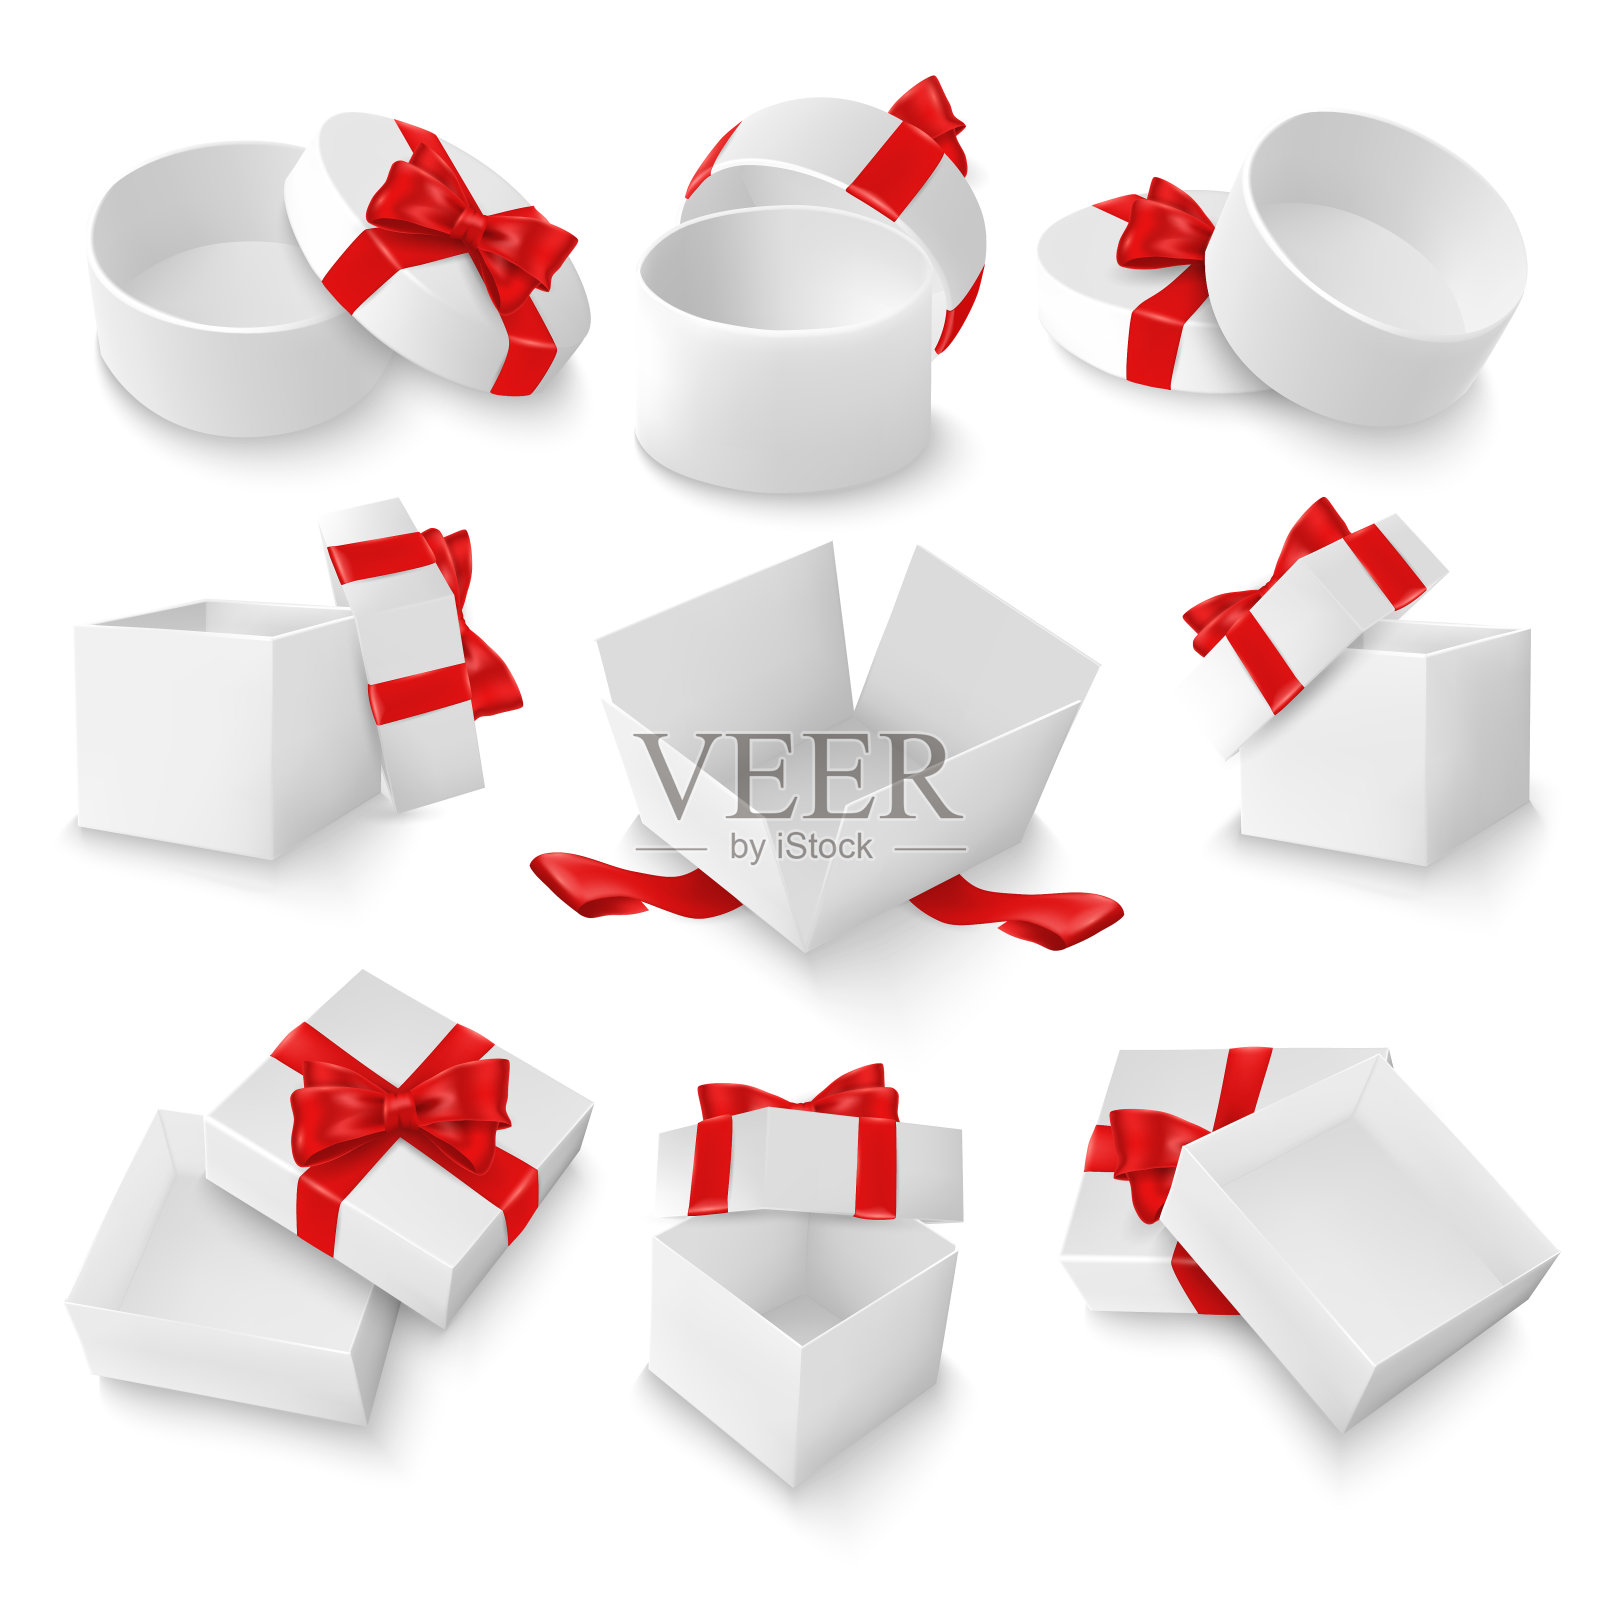 625 _1808.m10.i312.n003.p.c25.727692988礼品盒。白色打开的礼物空盒子与红色蝴蝶结和丝带。圣诞节和情人节矢量模板设计元素图片